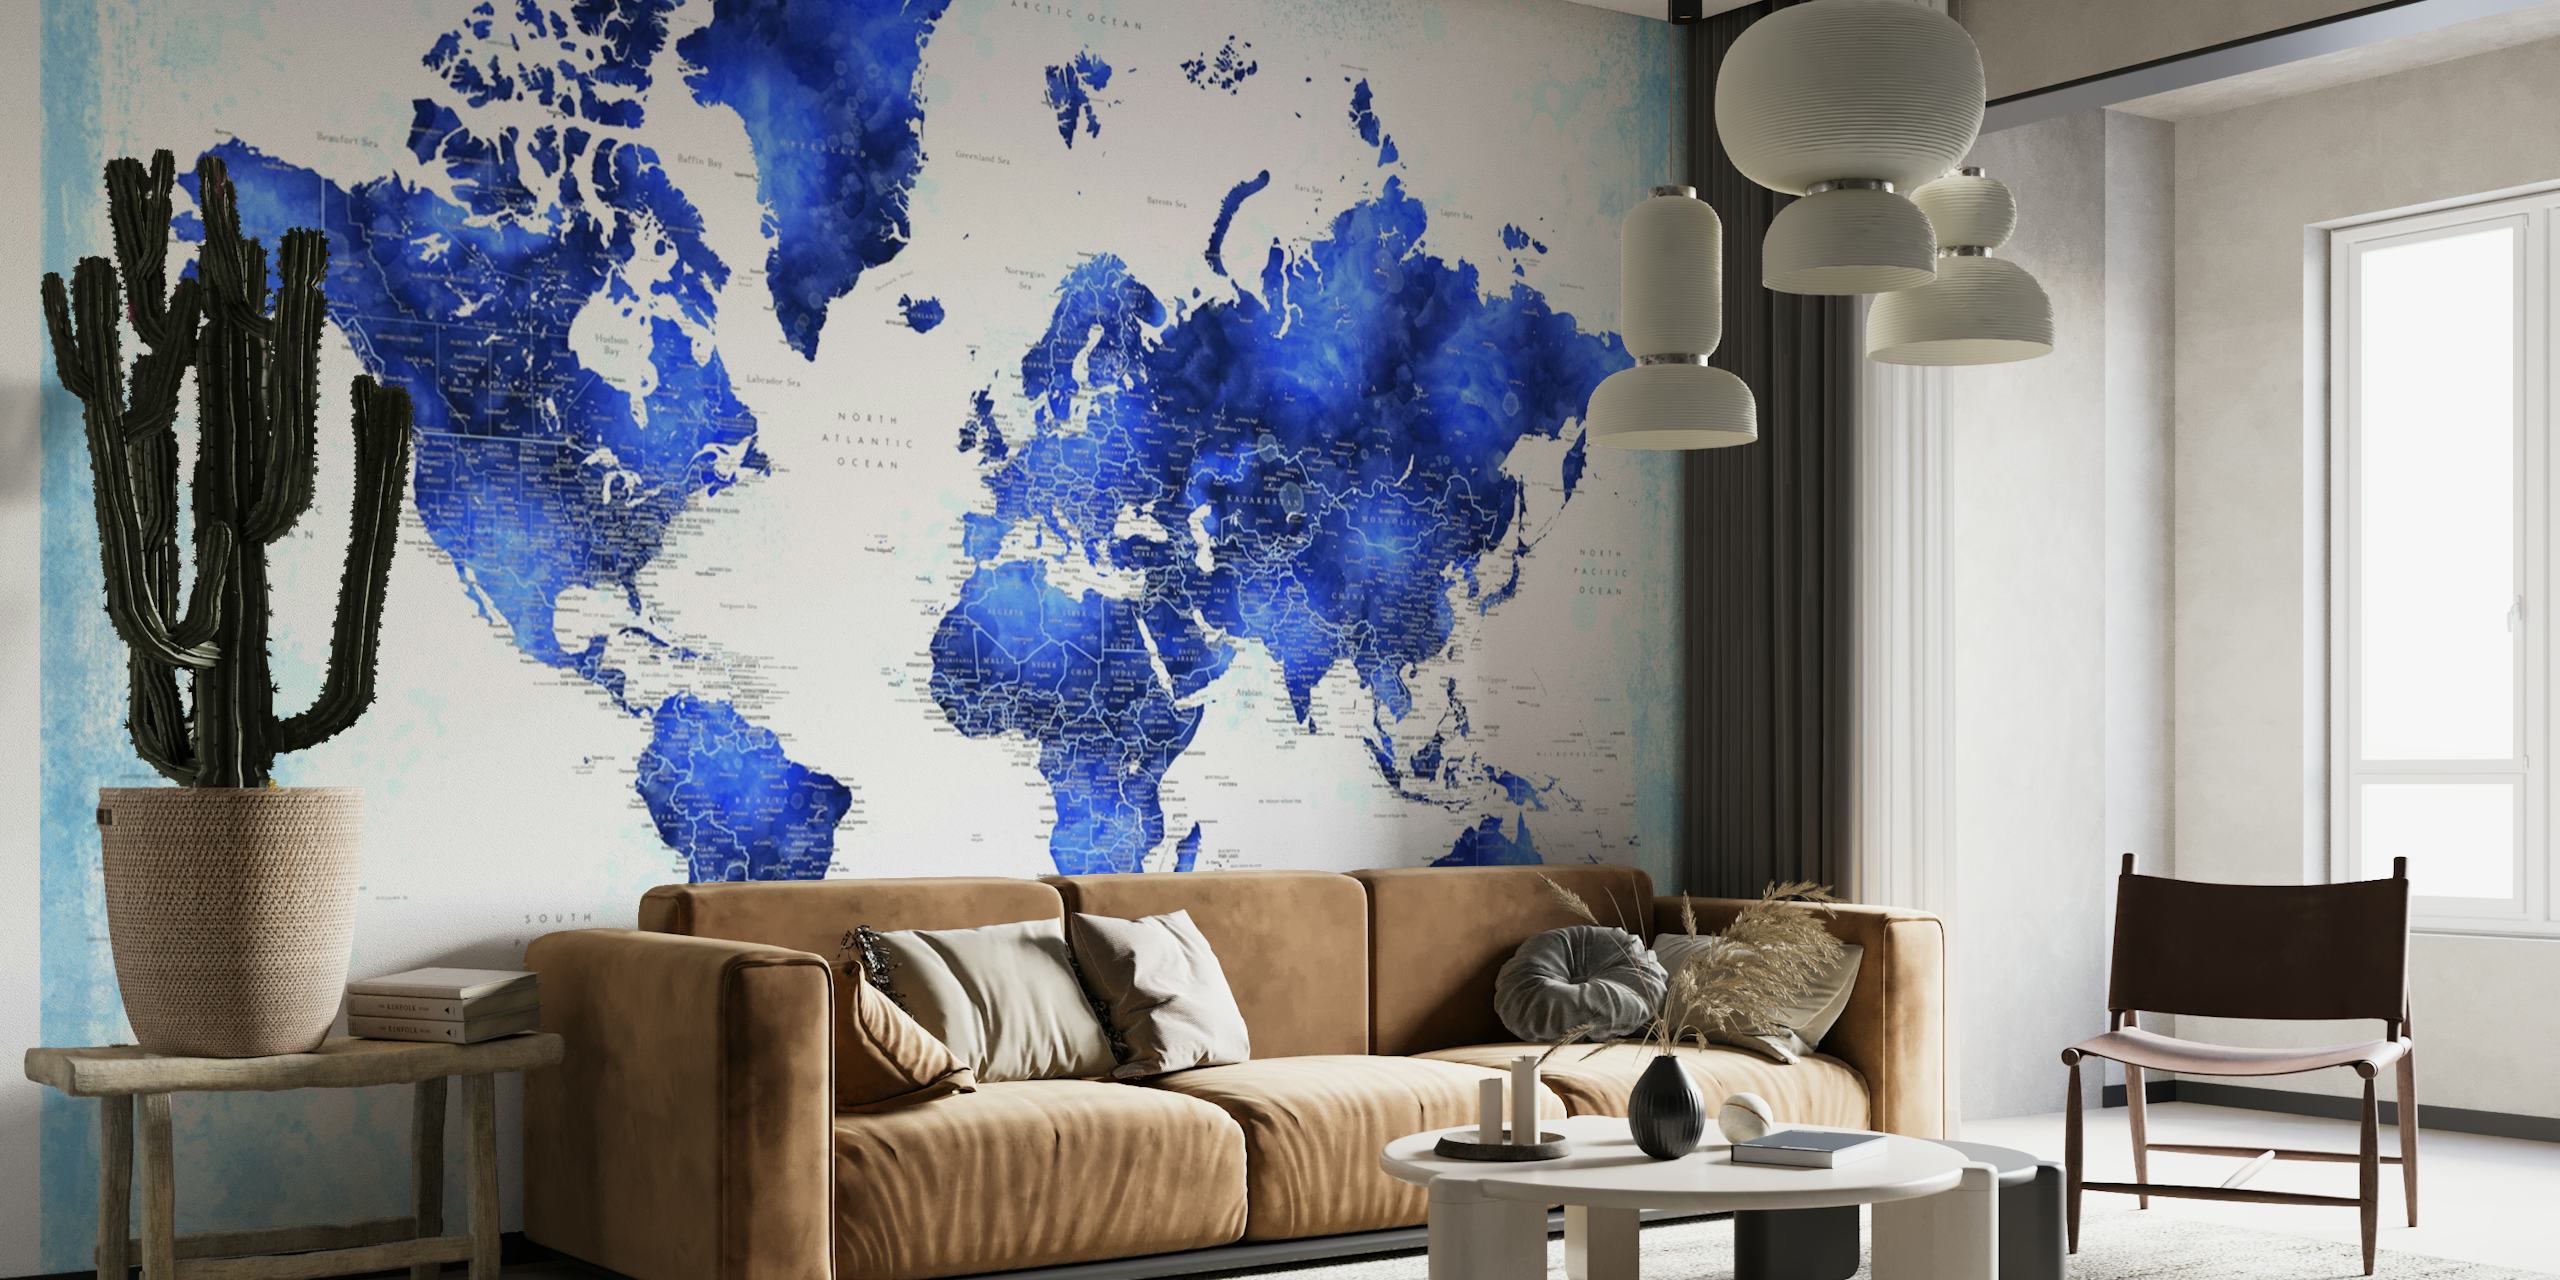 Detailní fototapeta s mapou světa Georgino v modrých odstínech